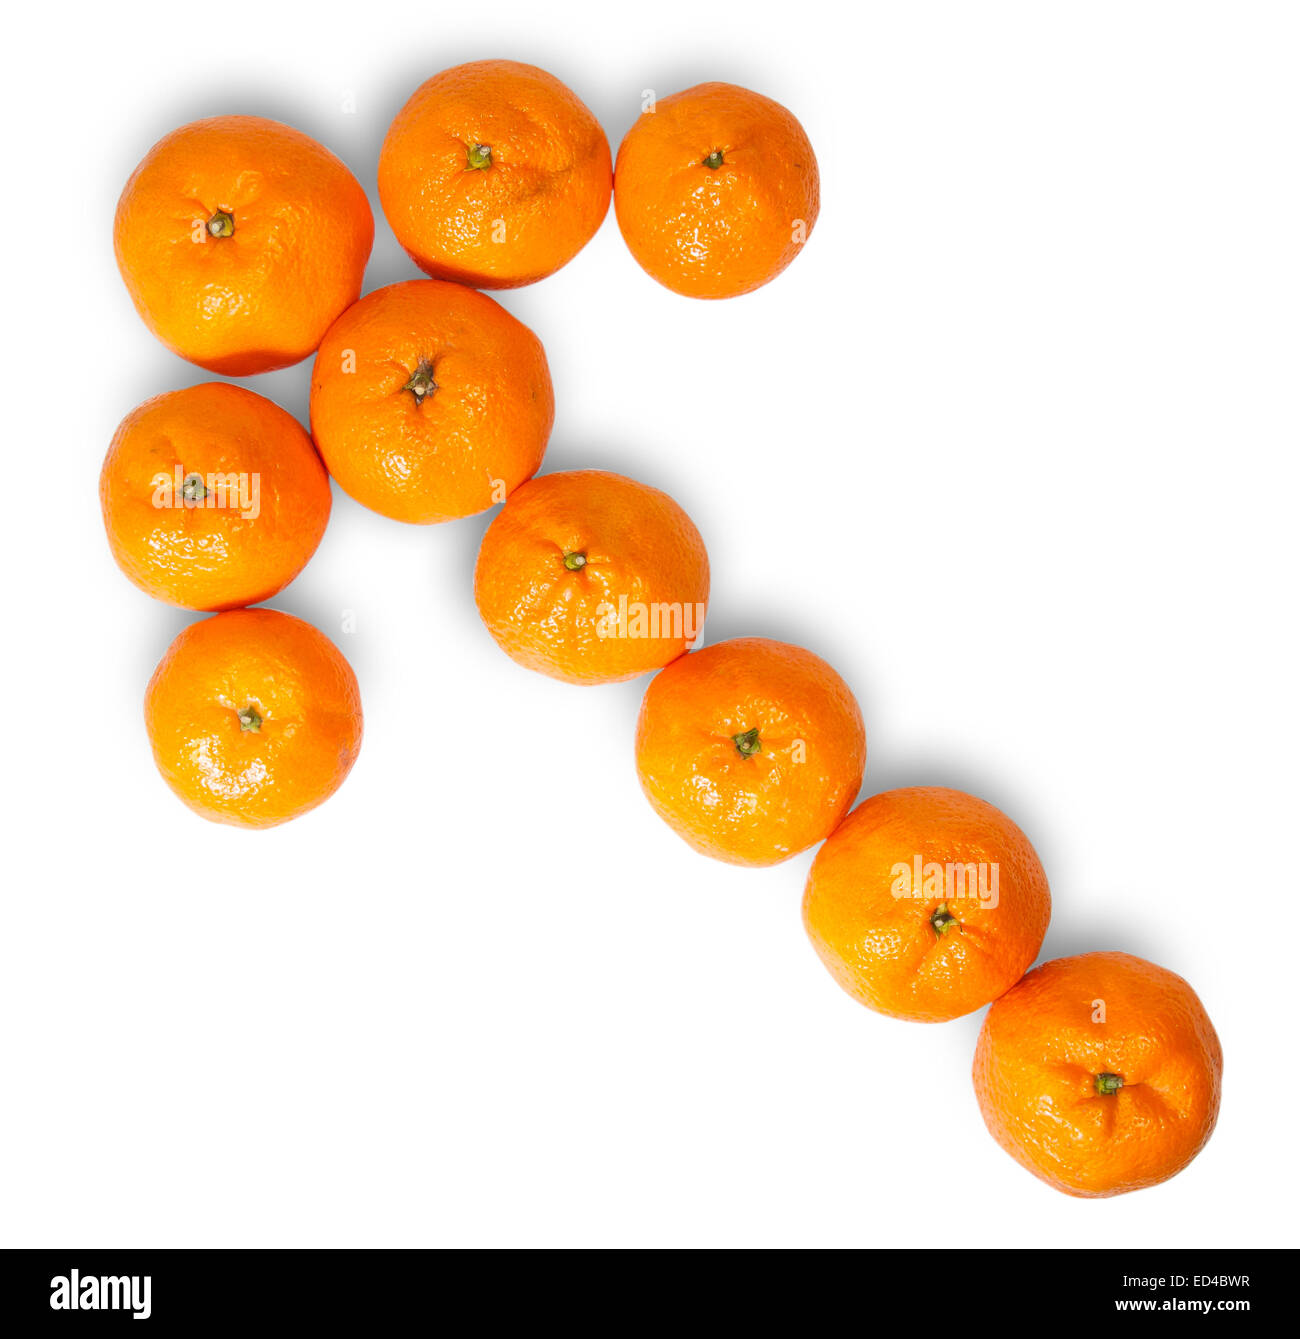 Reife saftige Orange Tangerine gefüttert wie ein Pfeil nach links, Isolated On White Background Stockfoto